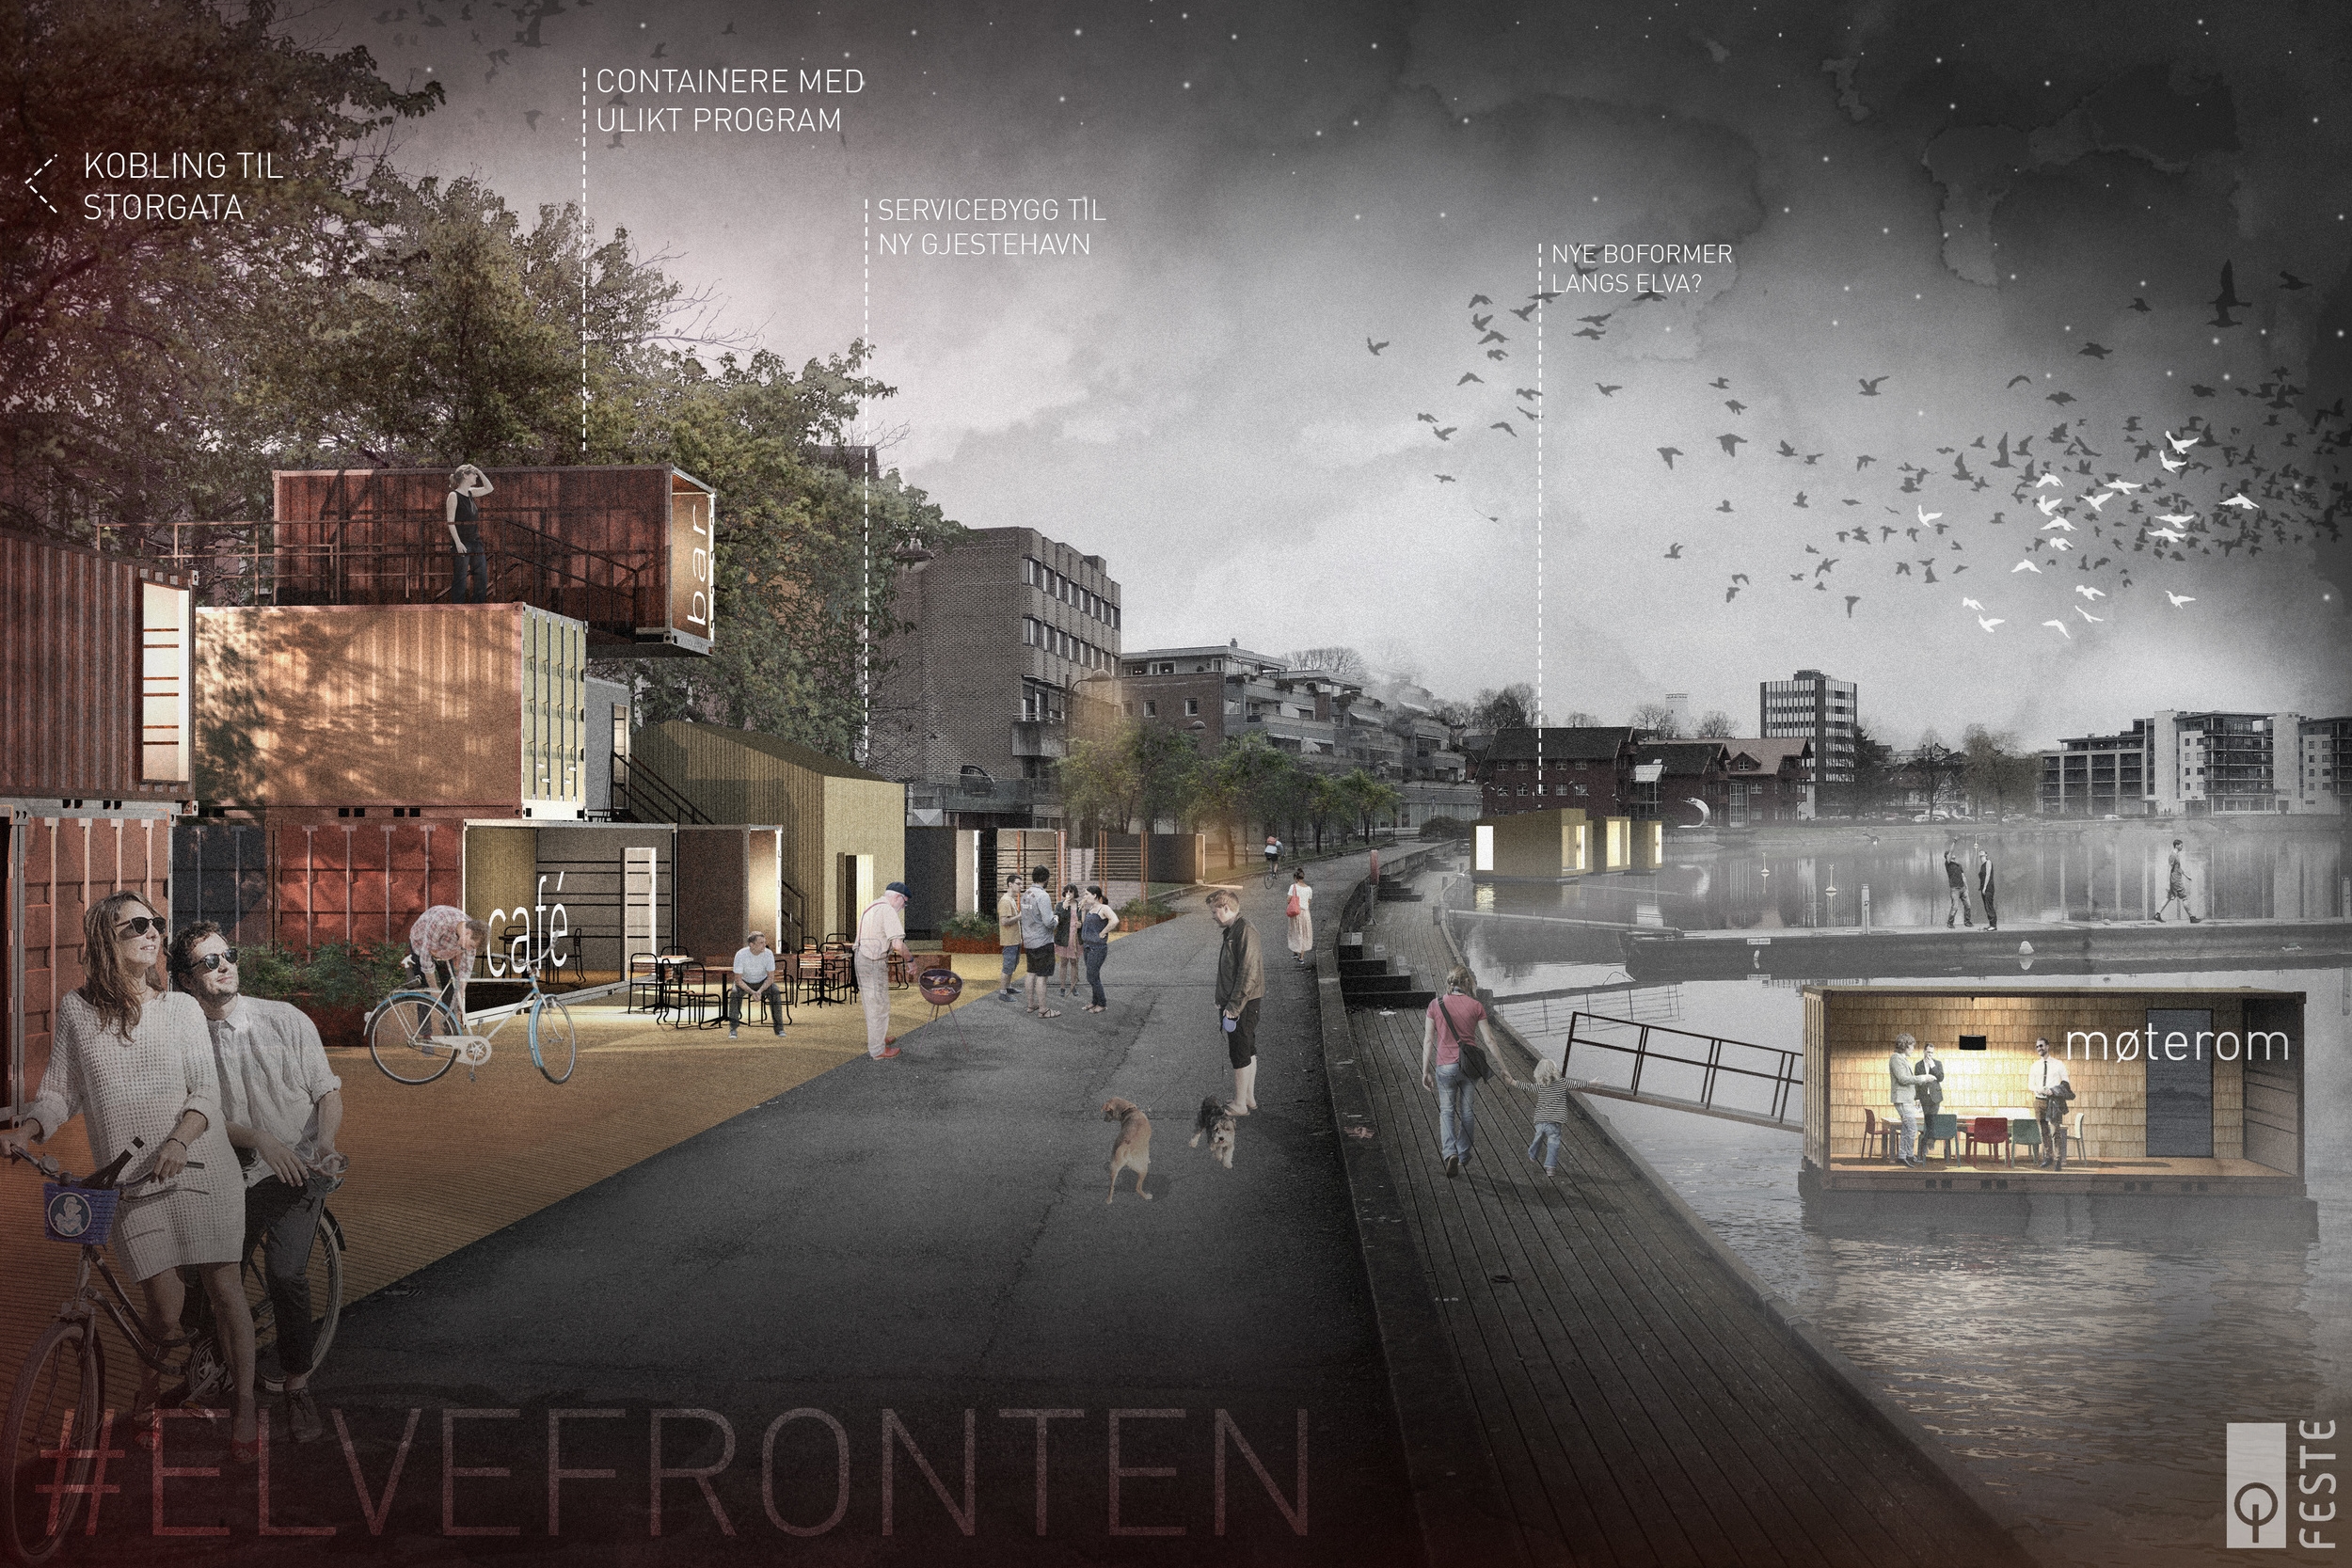   Illustrasjon av idé for ny Elvefront i Porsgrunn.&nbsp;  